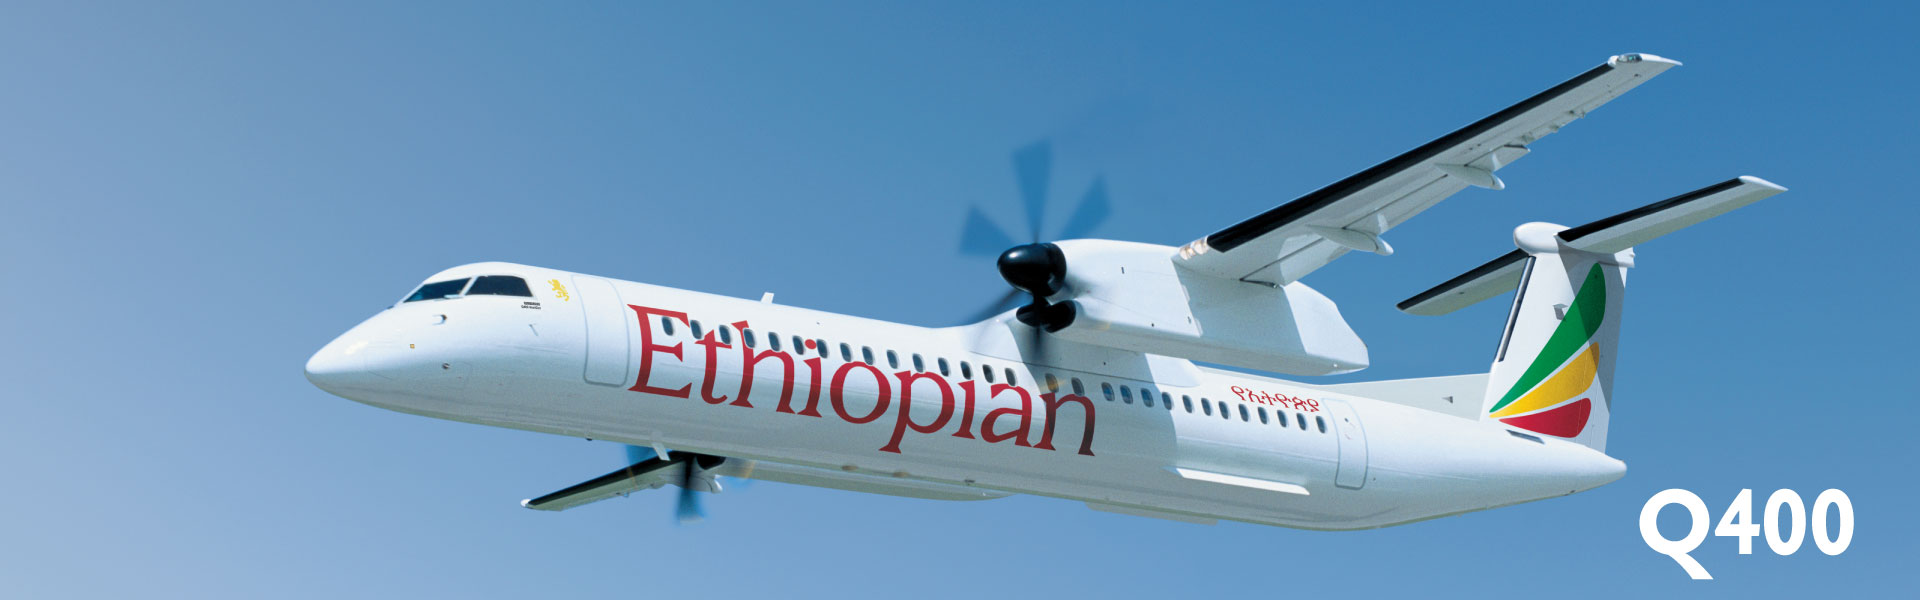 Ethiopian airlines